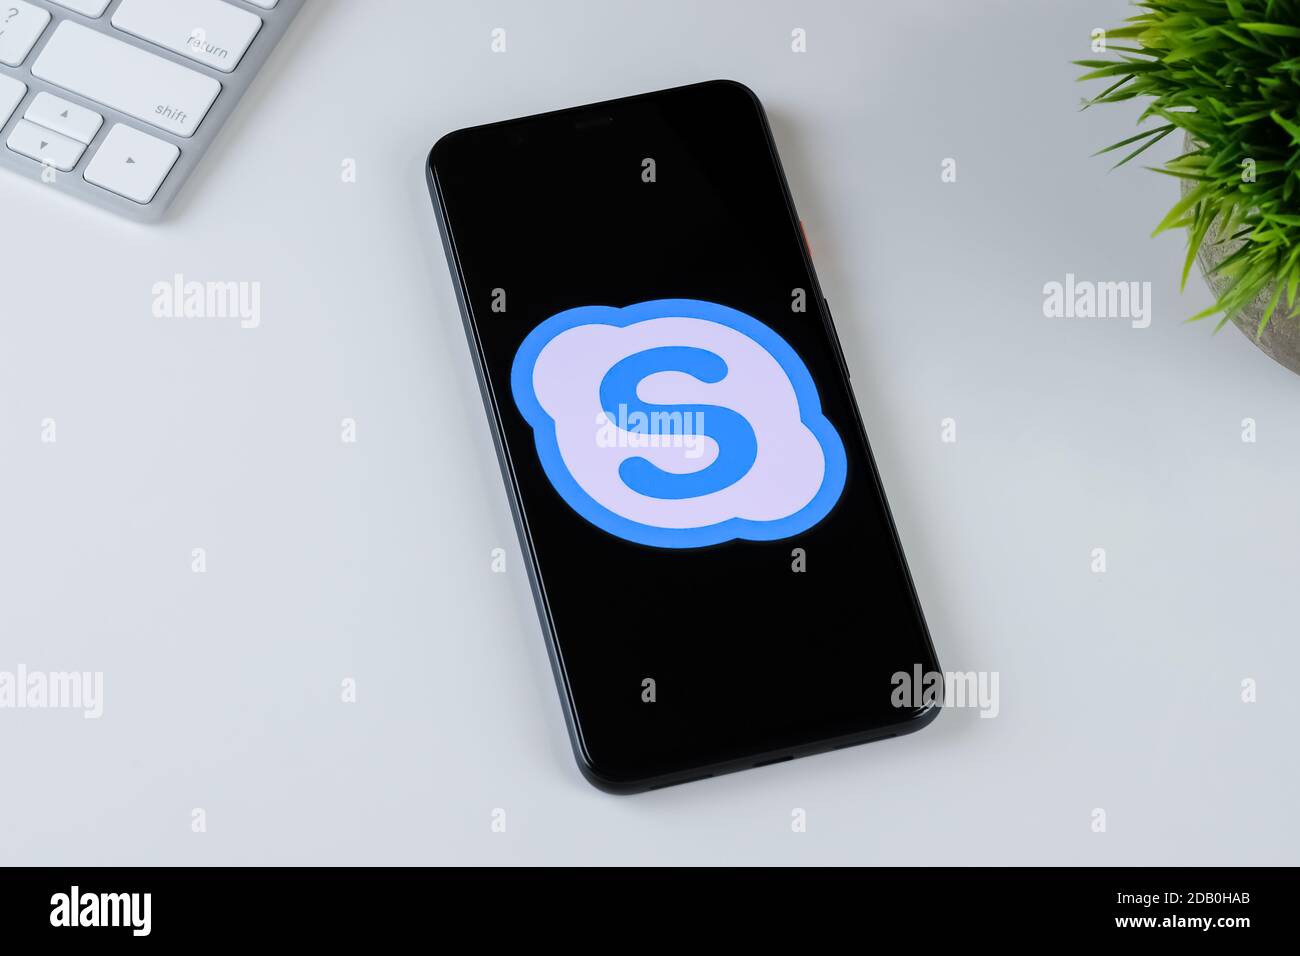 Logo de l'application Skype Lite sur l'écran d'un smartphone. Banque D'Images